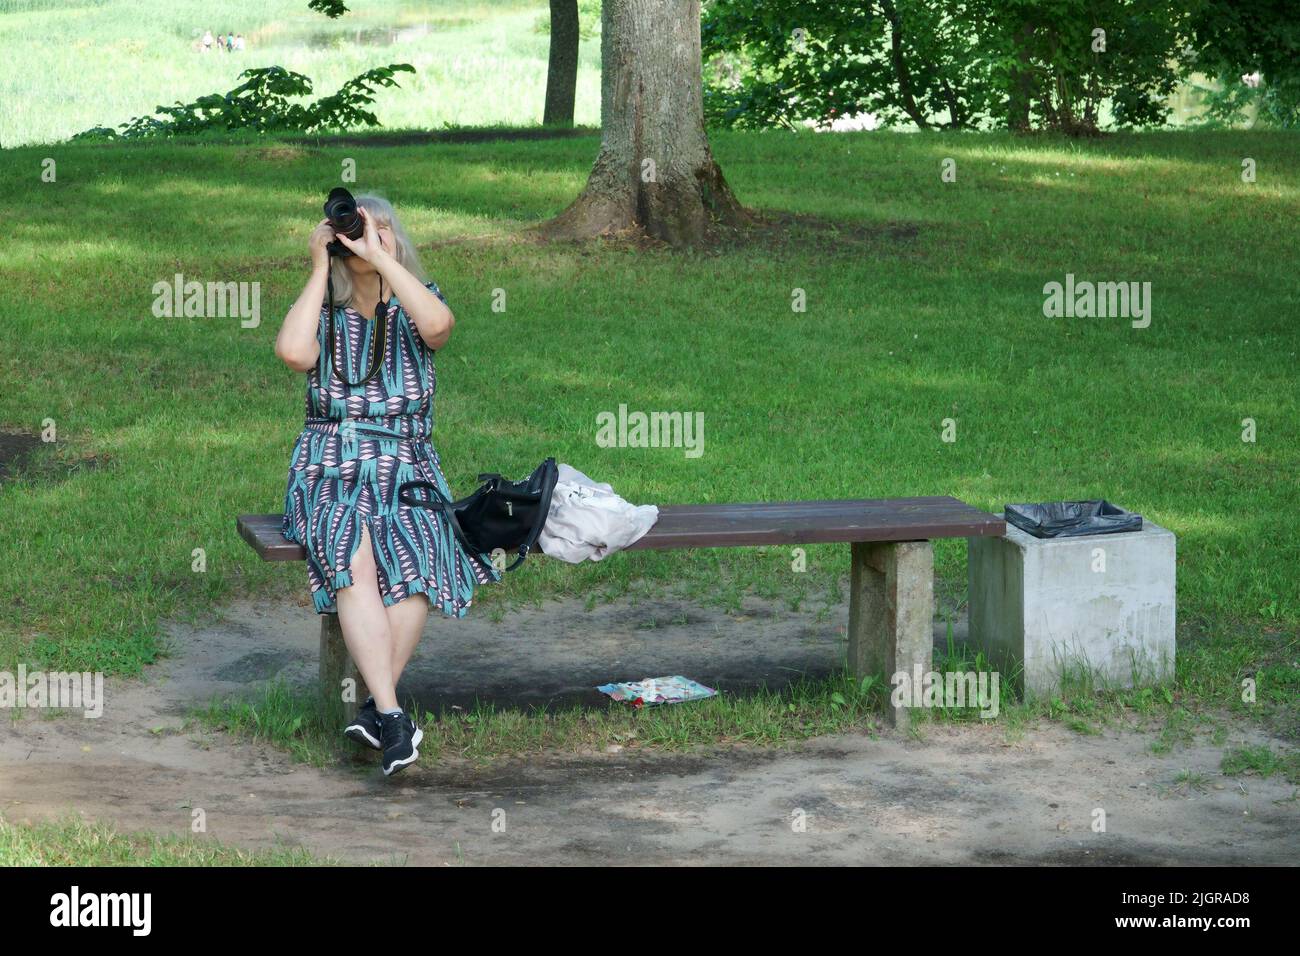 Lady con una fotocamera su una panca in un parco guarda in su, alla ricerca di una scena per una foto. La fotografia come hobby, passione e professione della gente. Foto Stock